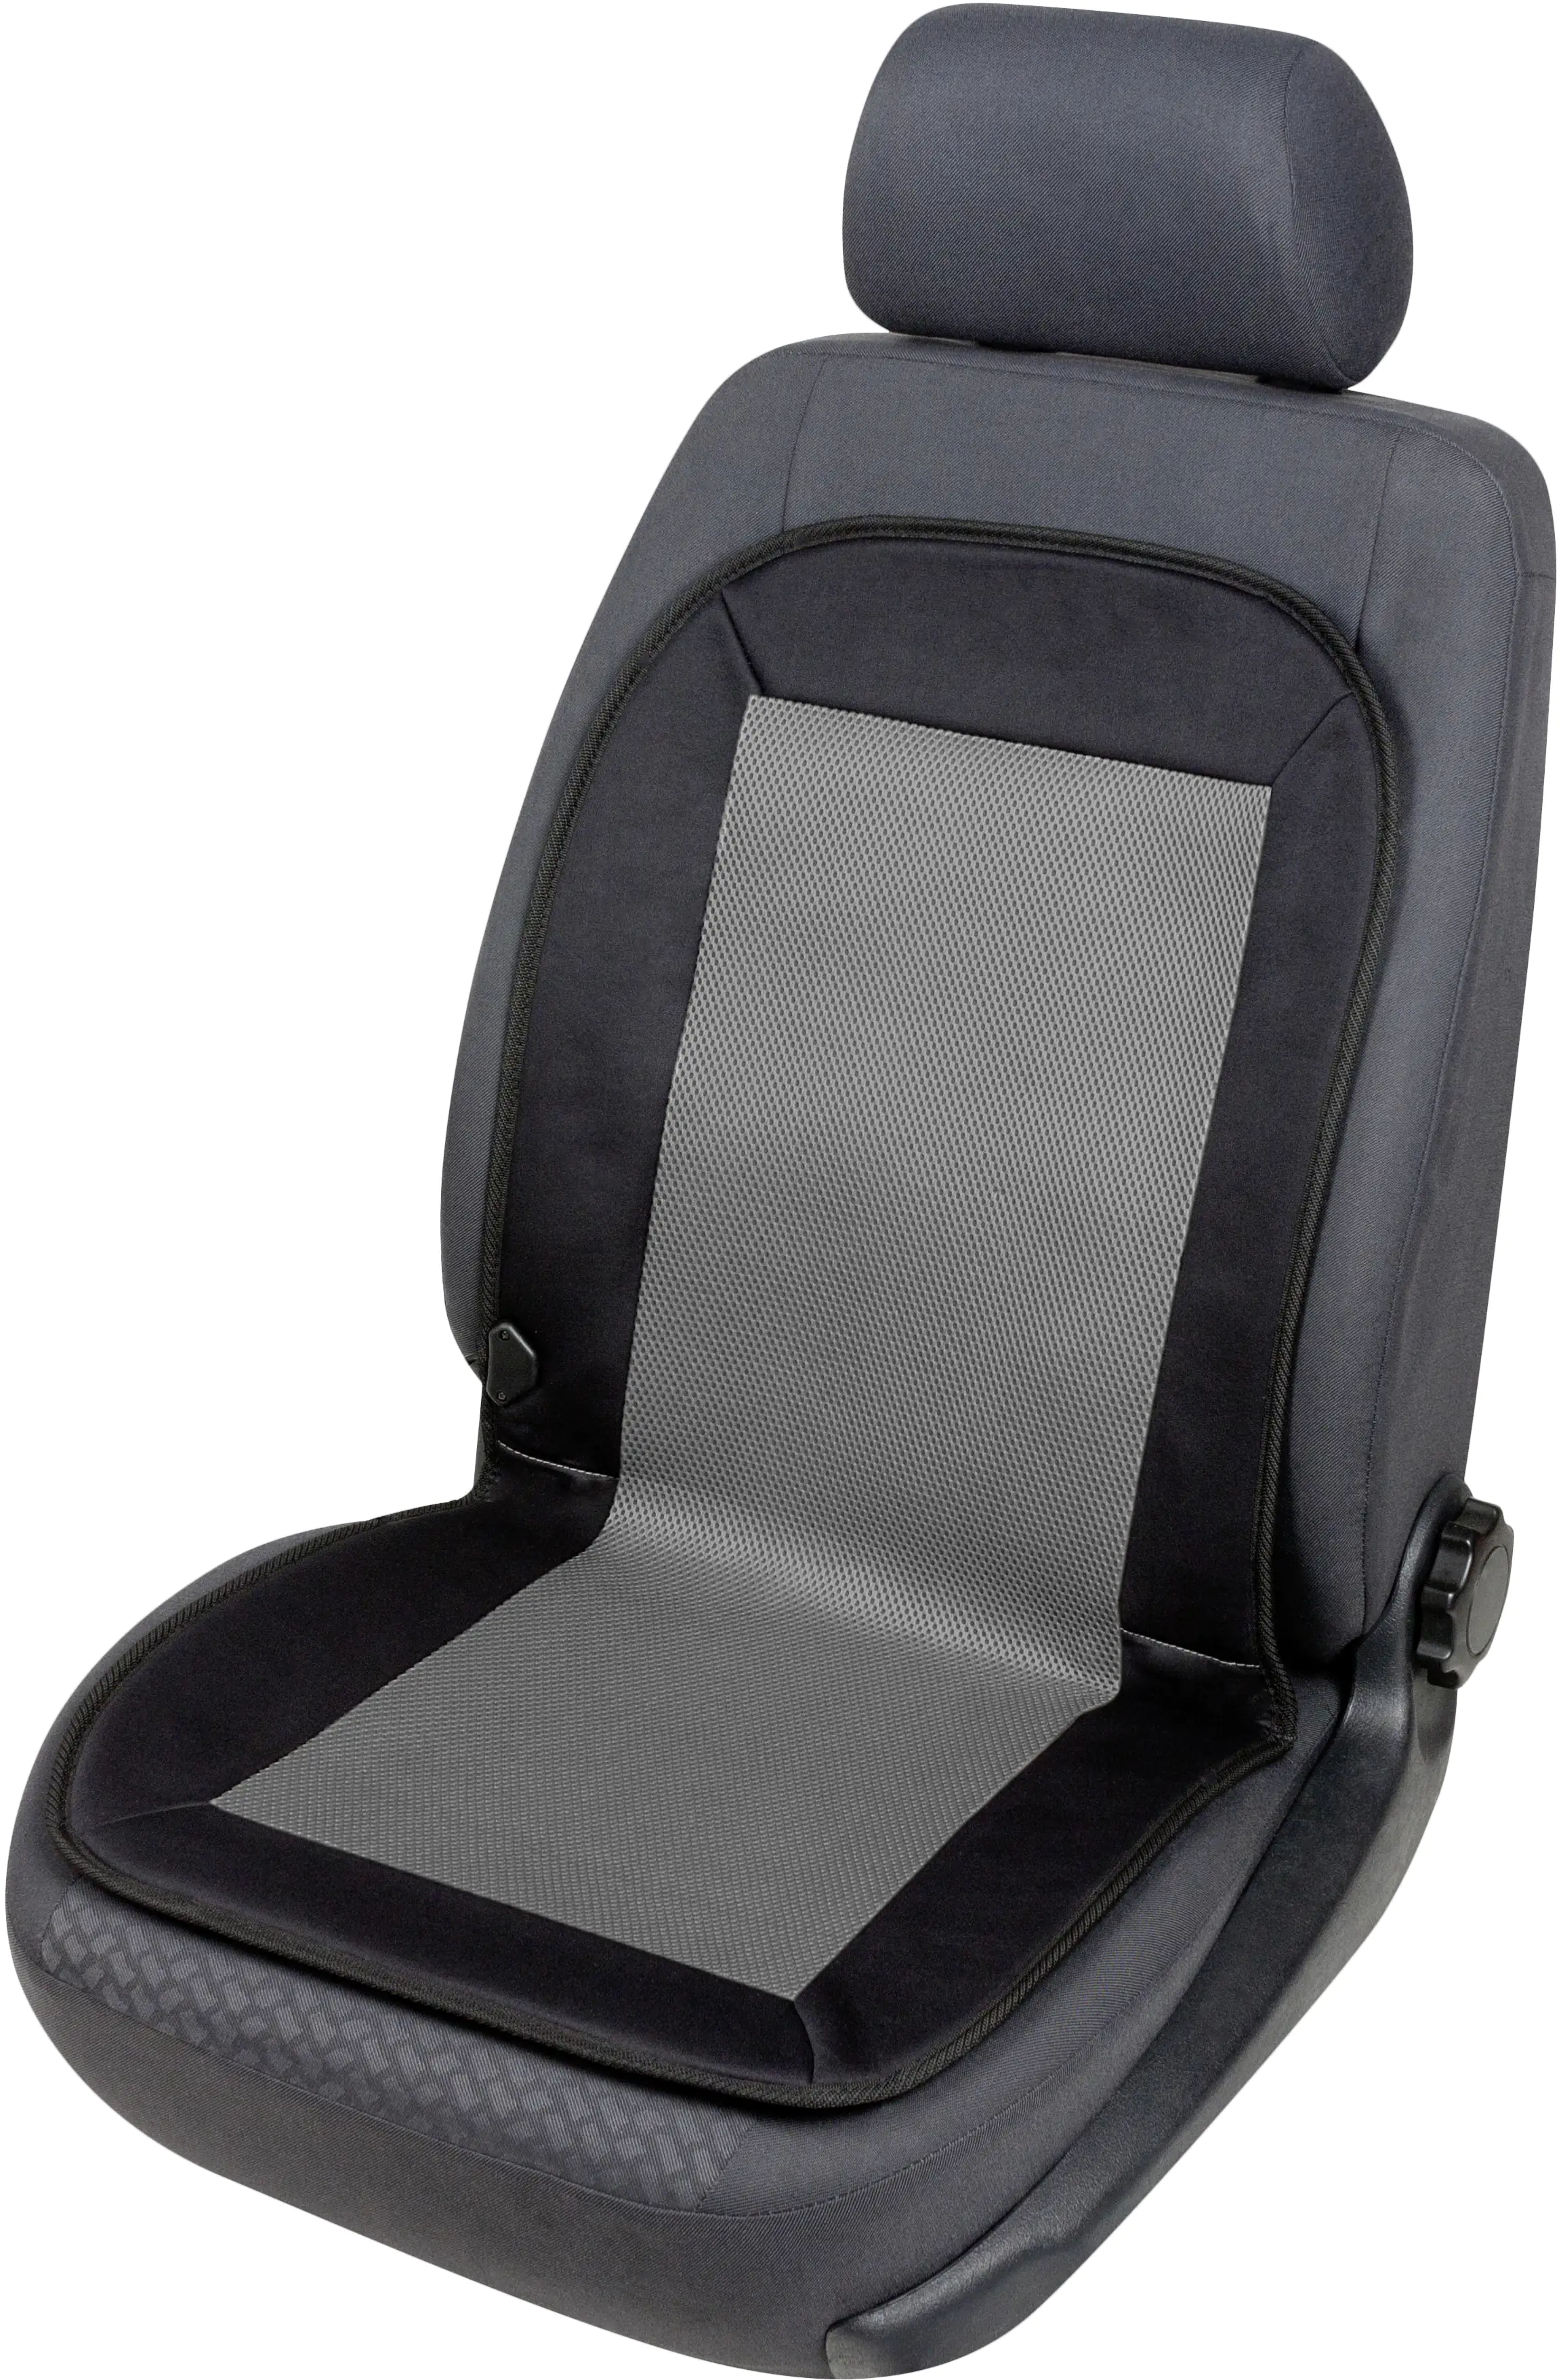 Walser Autositz Heizkissen Sitzheizung Carbon Plus schwarz-grau 1-teilig  kaufen